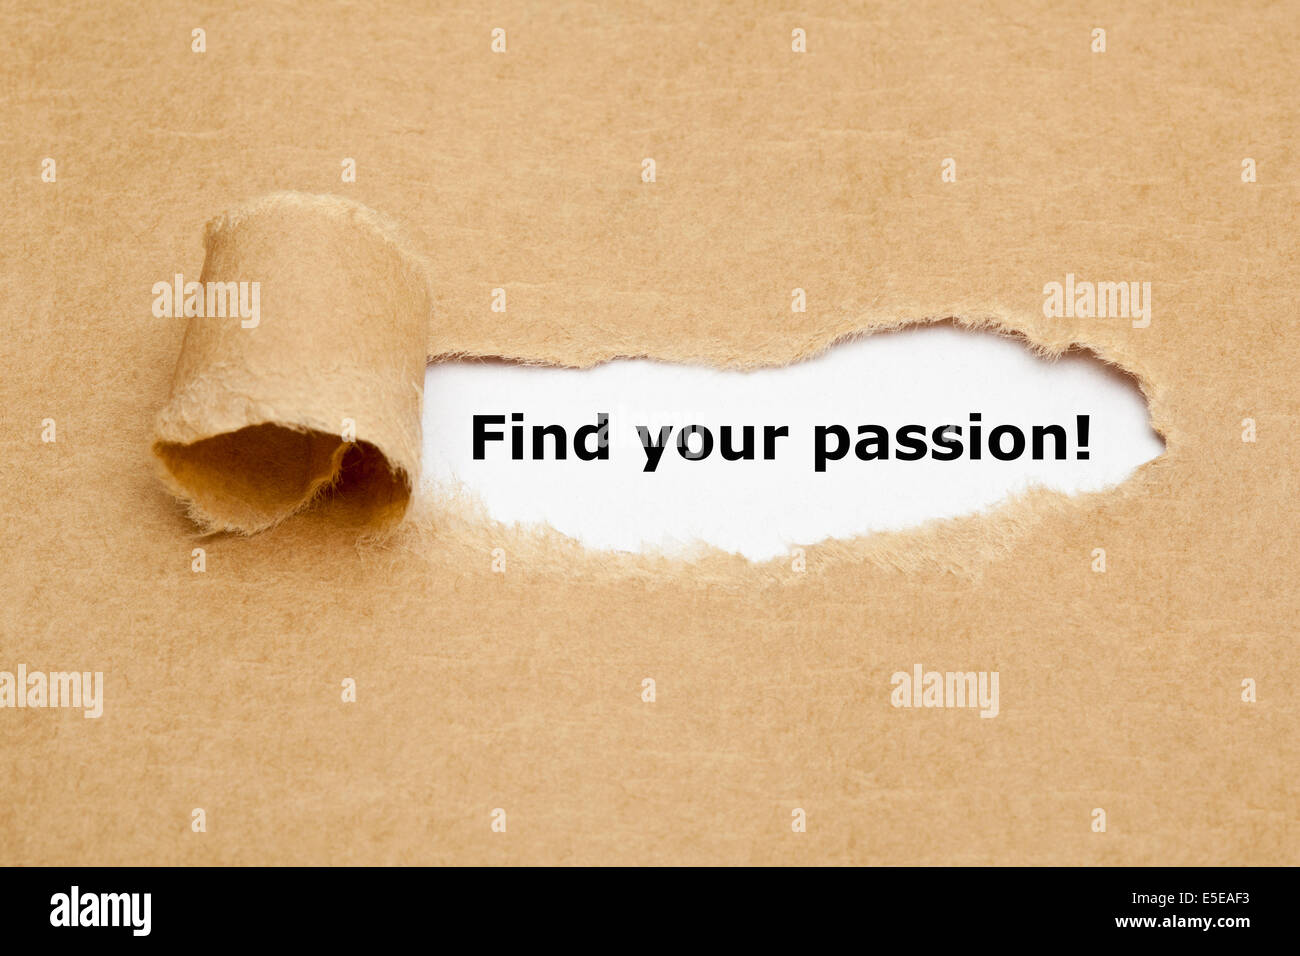 Finden Sie Ihre Leidenschaft! erscheint hinter zerrissenes braunen Papier. Stockfoto